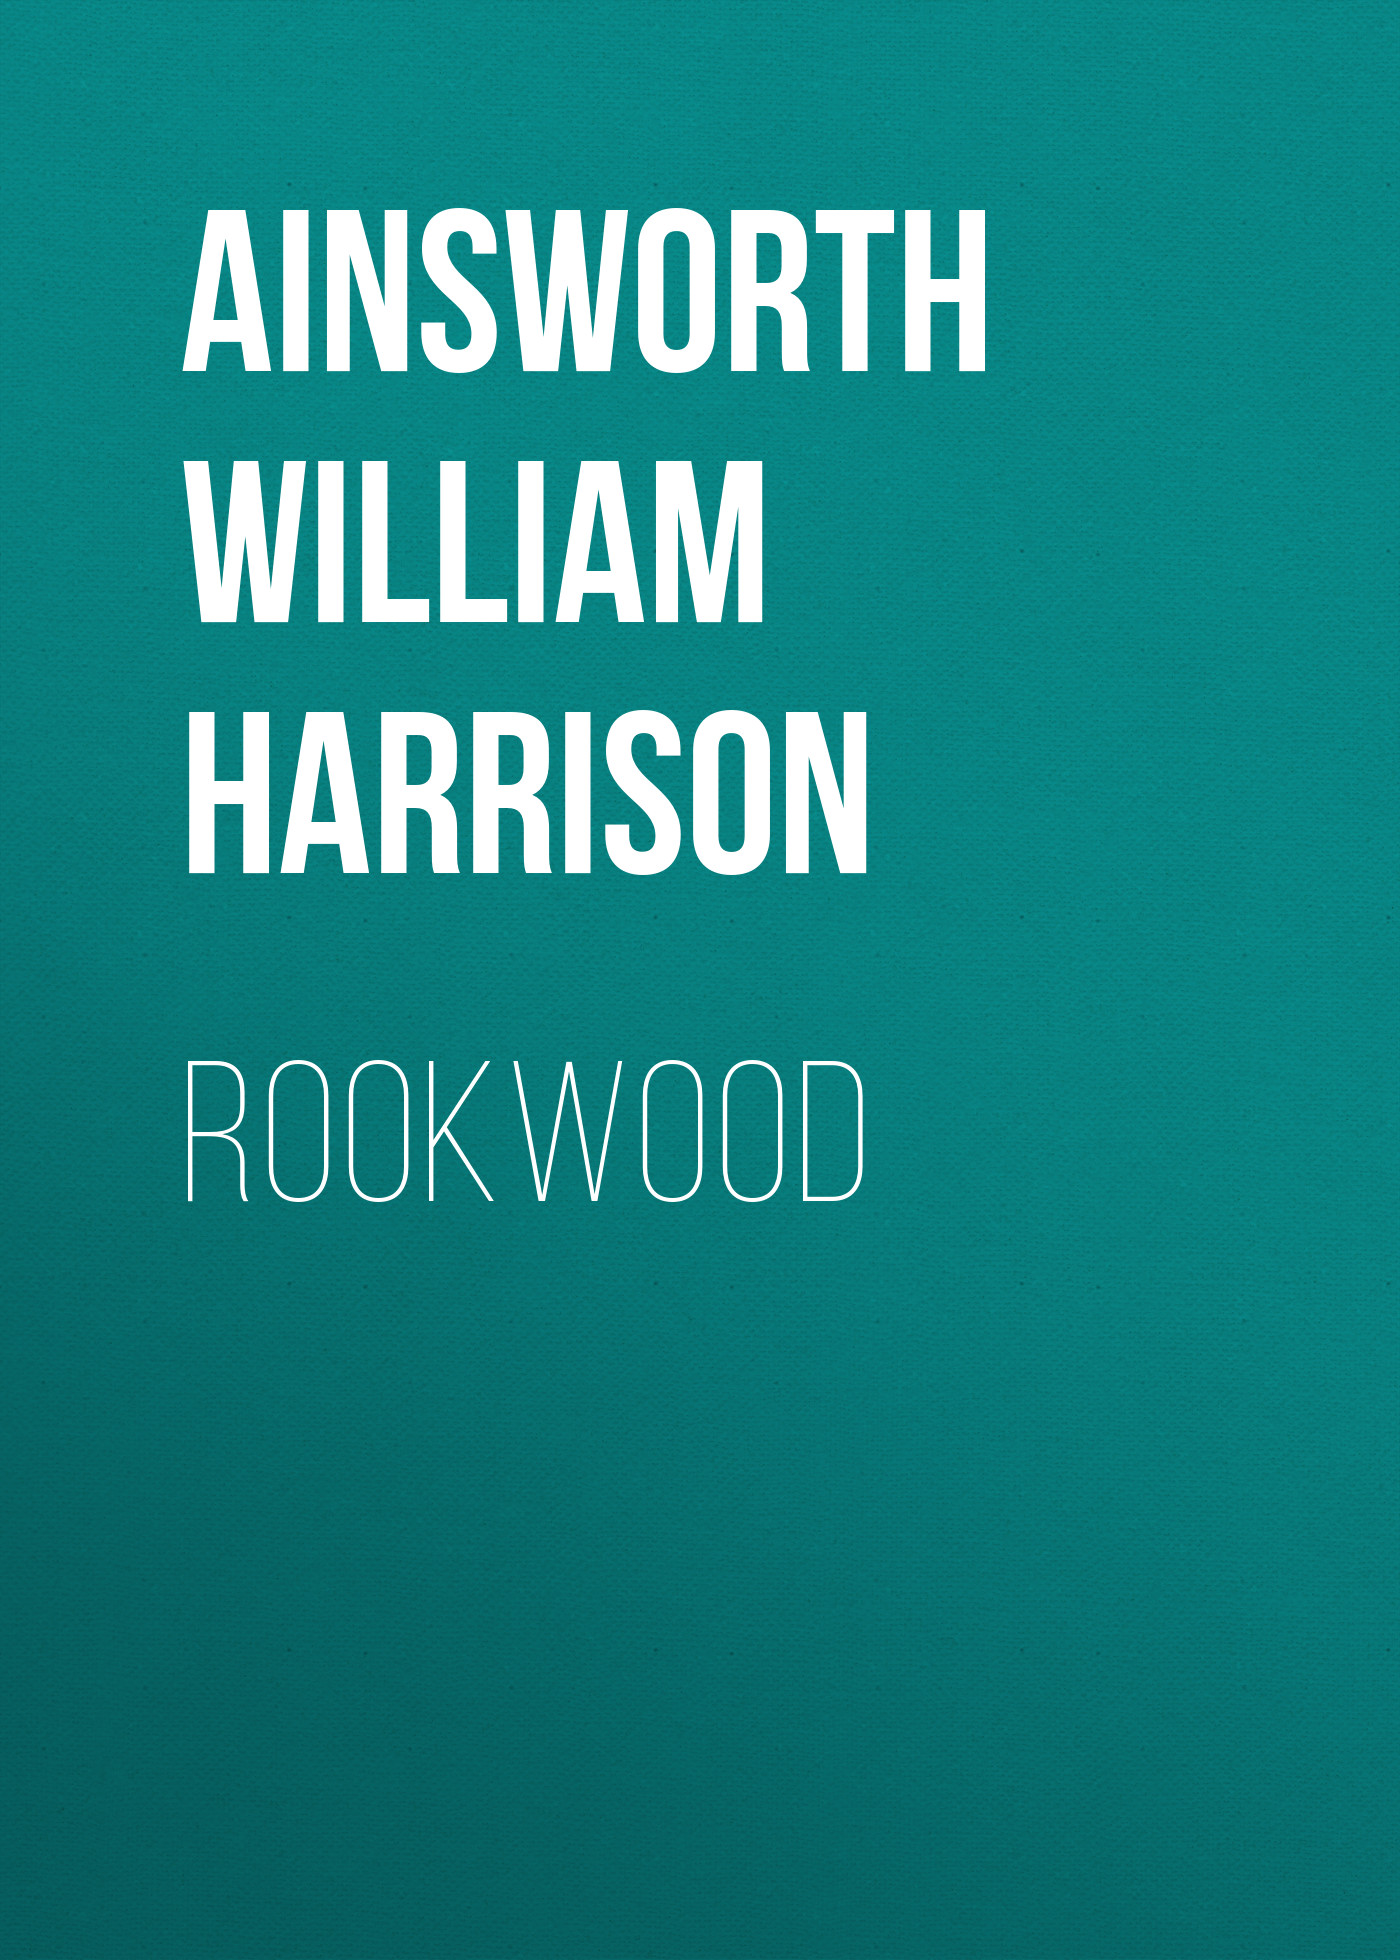 Книга Rookwood из серии , созданная William Ainsworth, может относится к жанру Зарубежная классика, Литература 19 века, Европейская старинная литература. Стоимость электронной книги Rookwood с идентификатором 36365734 составляет 0 руб.